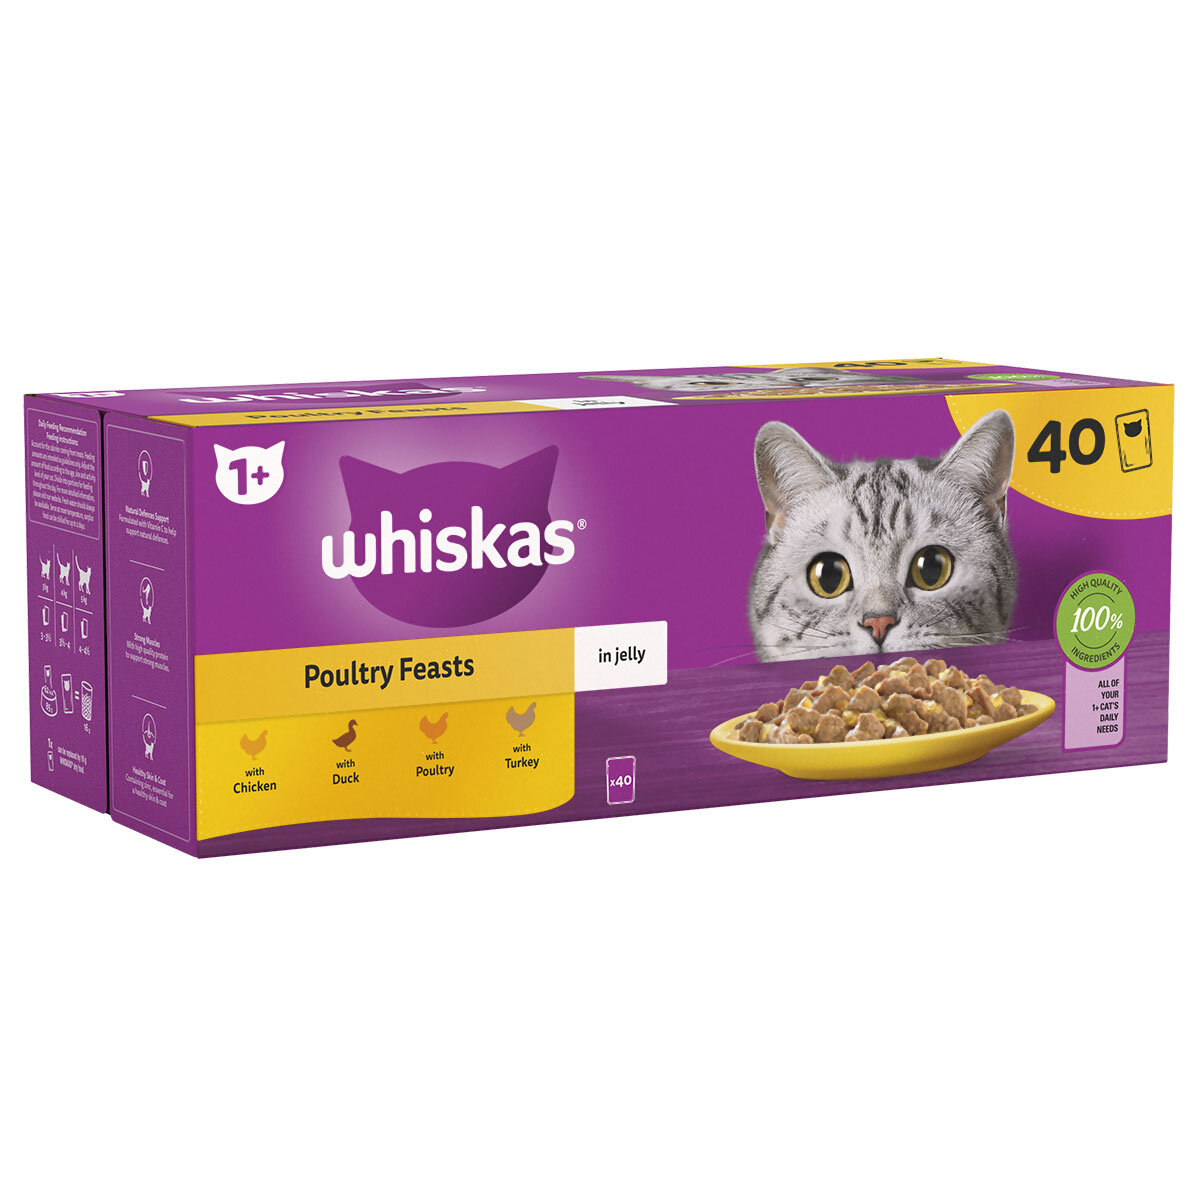 Whiskas 1+, adulte 96 x 85 g à prix discount sur